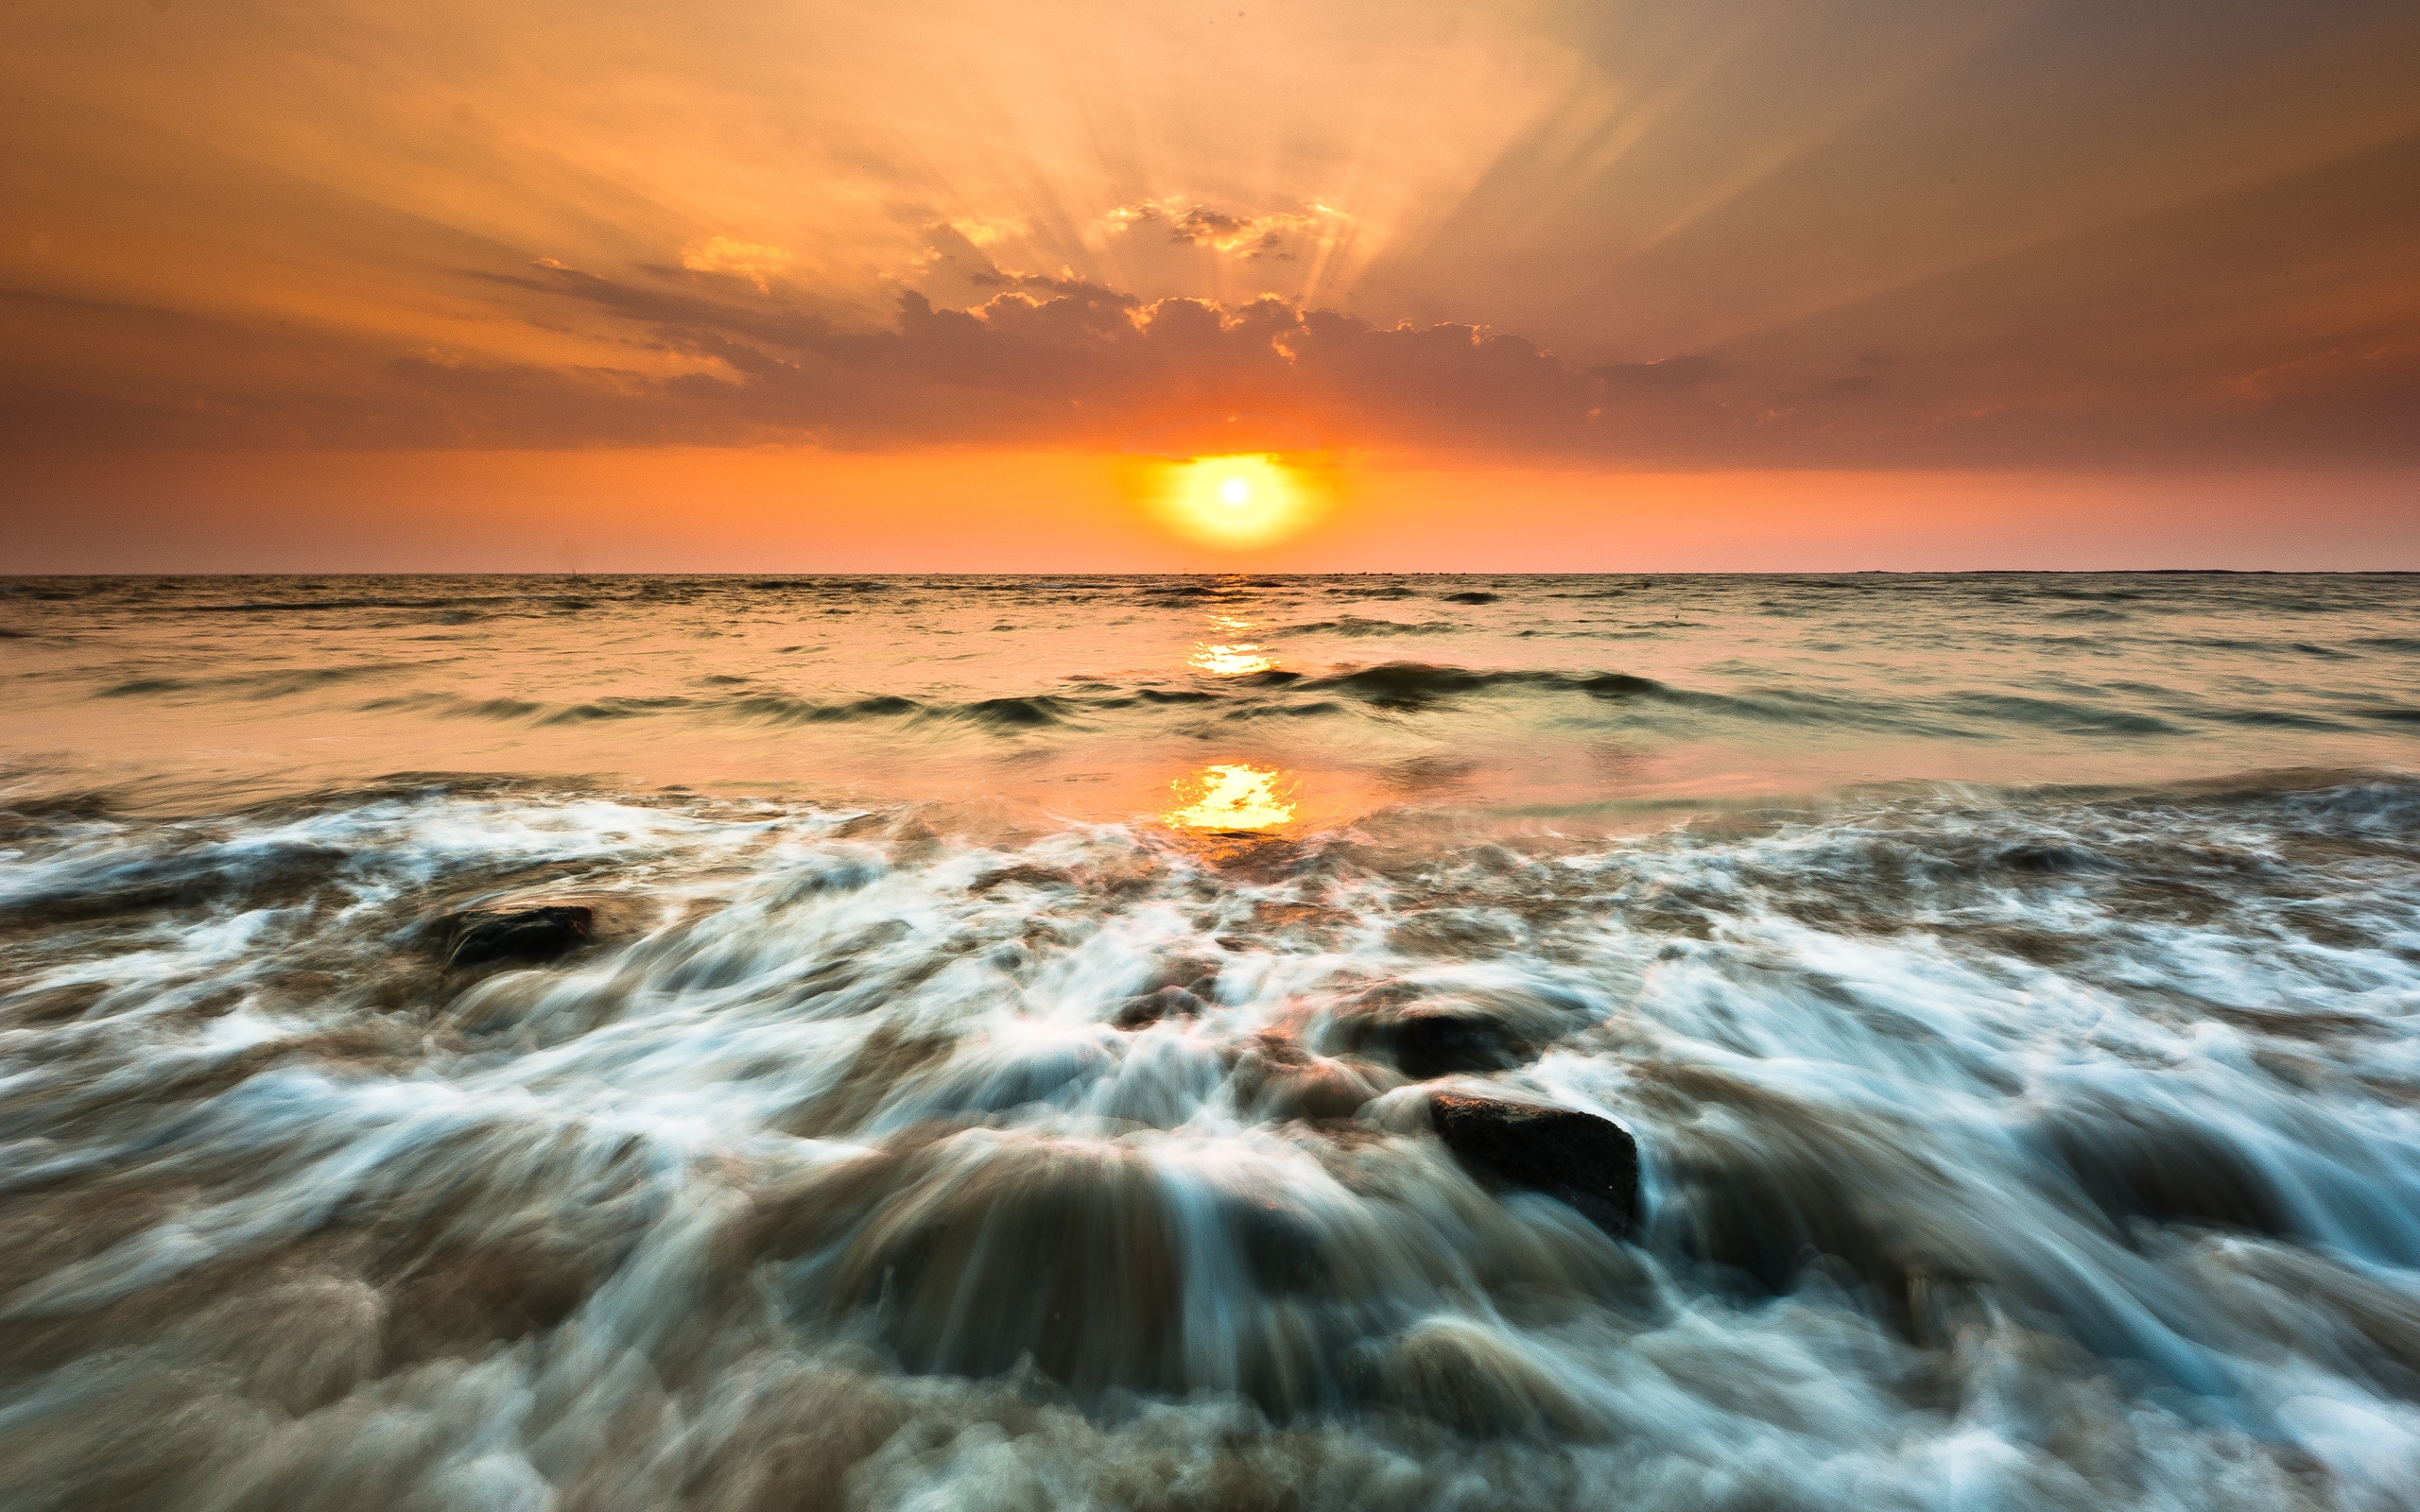 Gorai Beach Sunset for 2560 x 1600 widescreen resolution